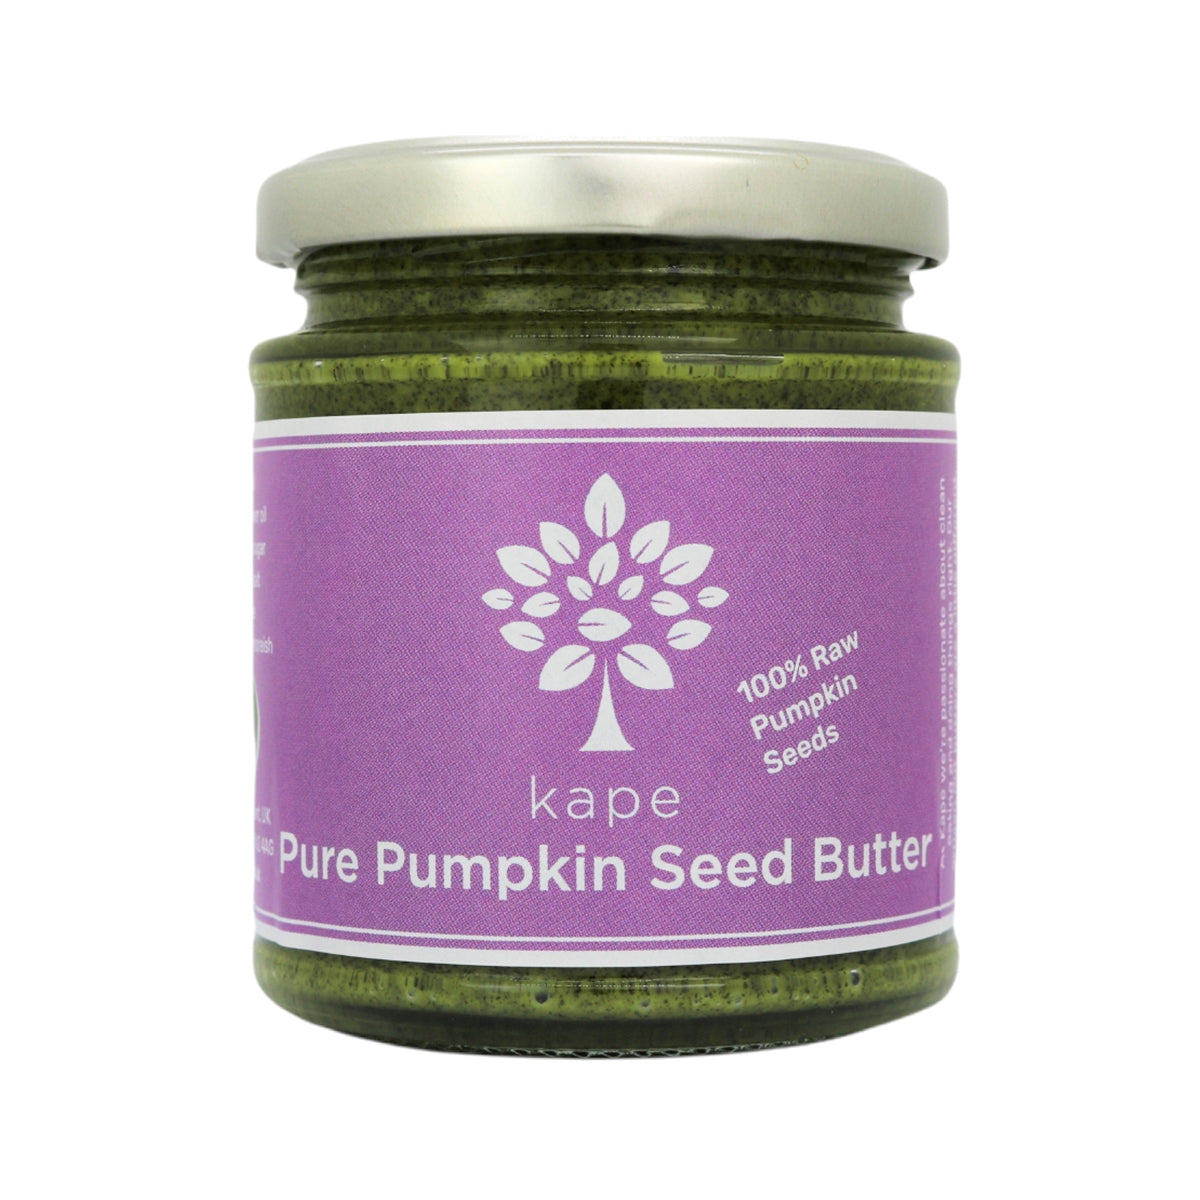 Pure Pumpkin Seed Butter